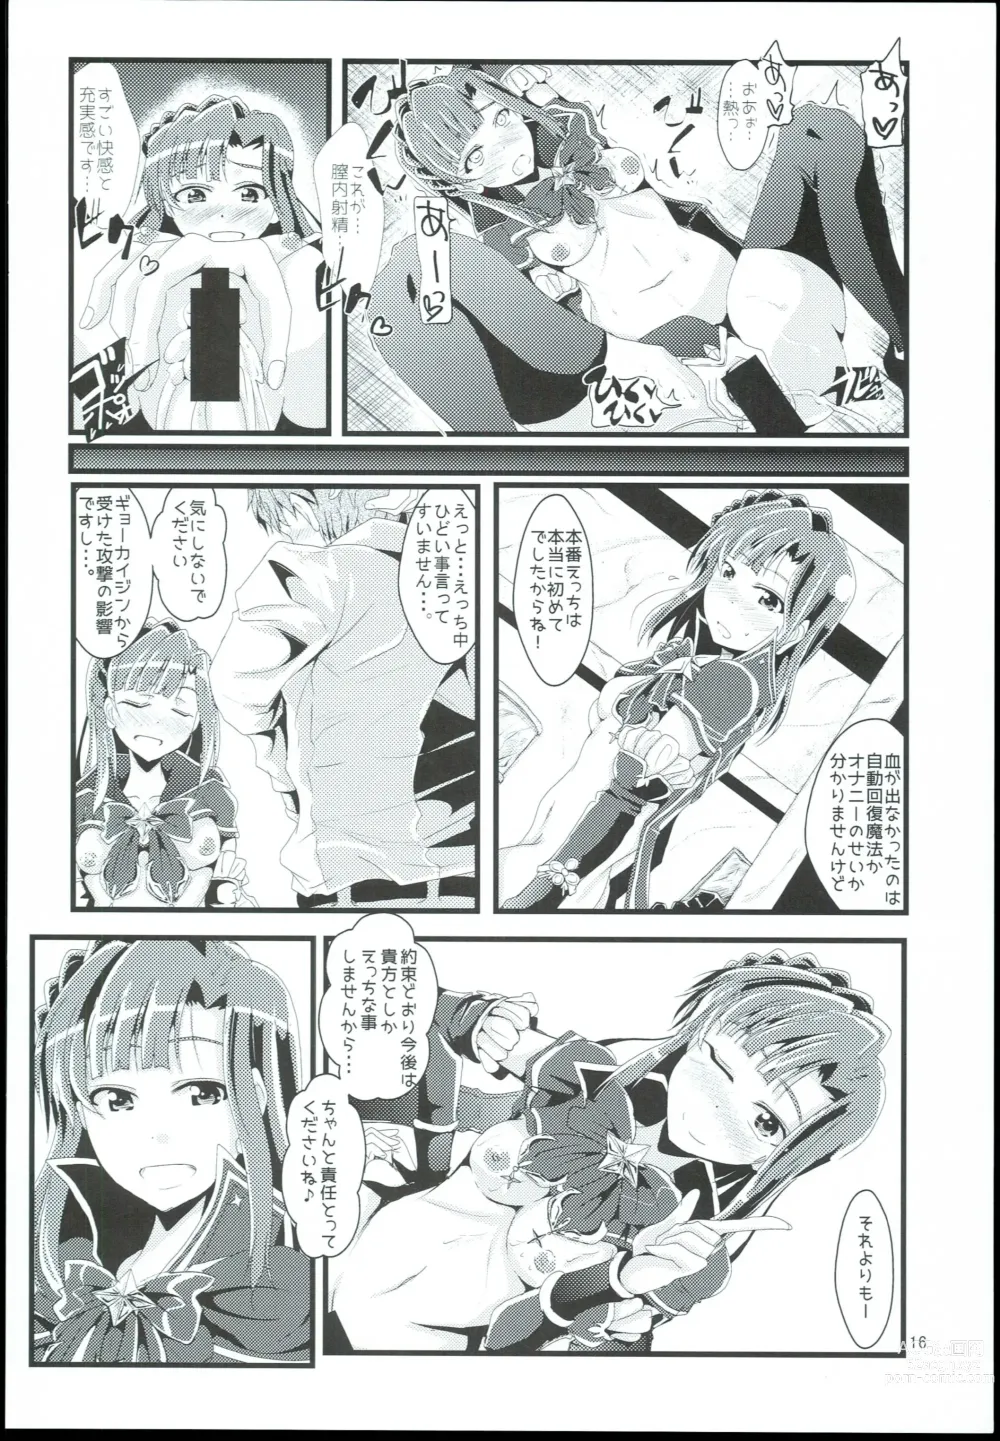 Page 16 of doujinshi Otanoshimi no Kioku Sousyuuhen